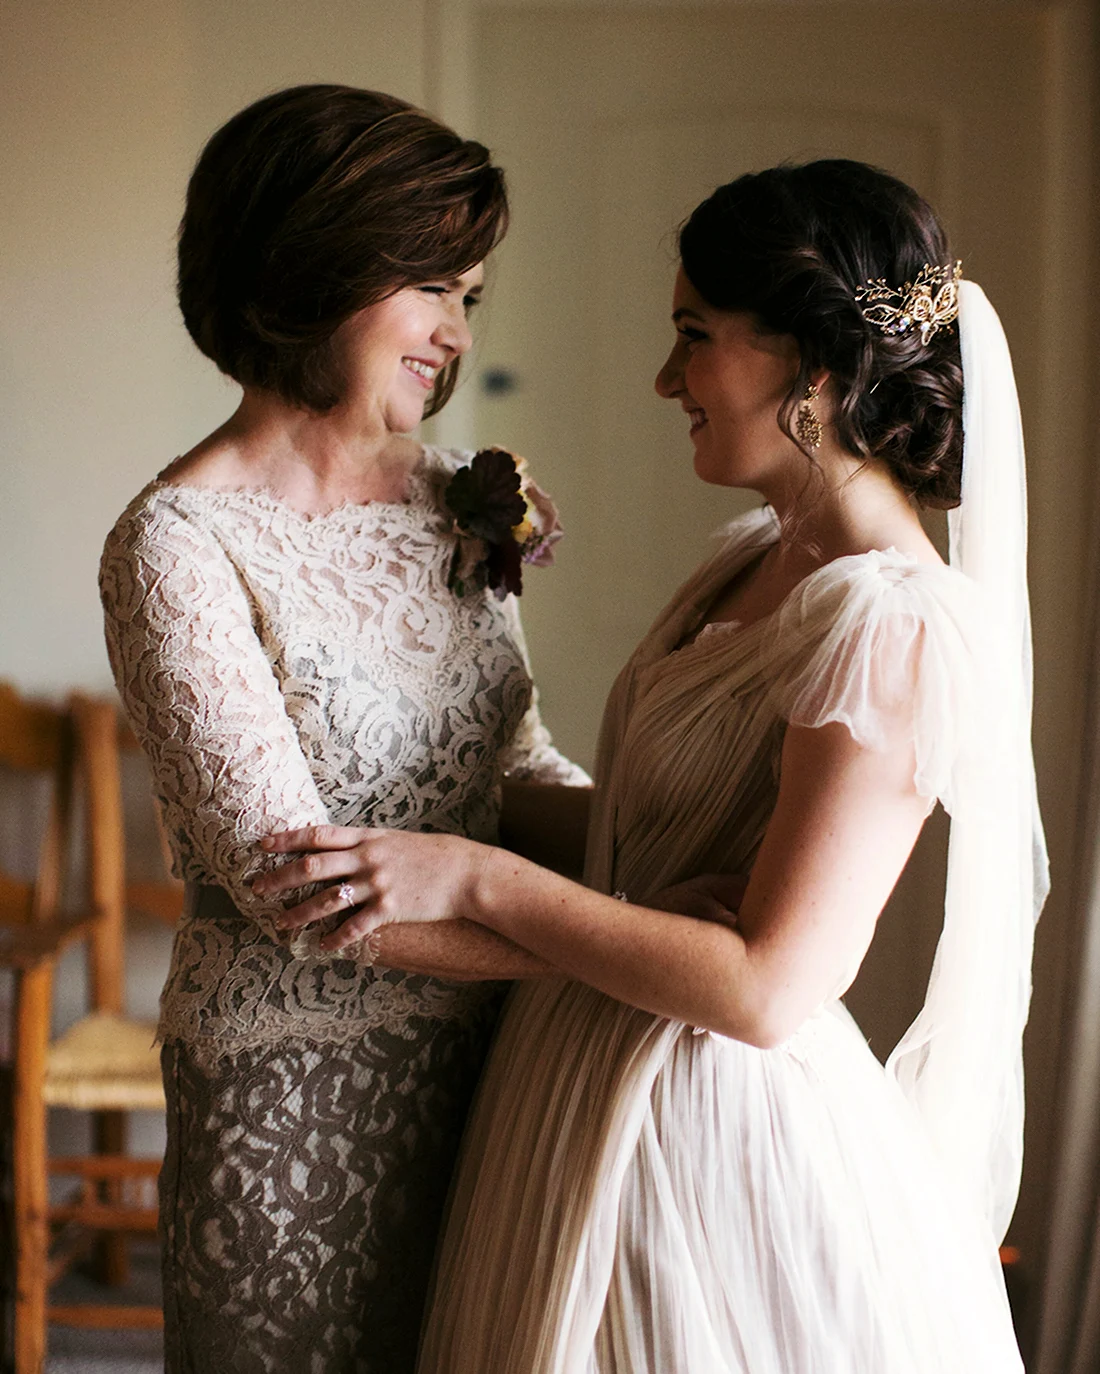 Красивые прически на свадьбу для мамы - фото онлайн на биржевые-записки.рф